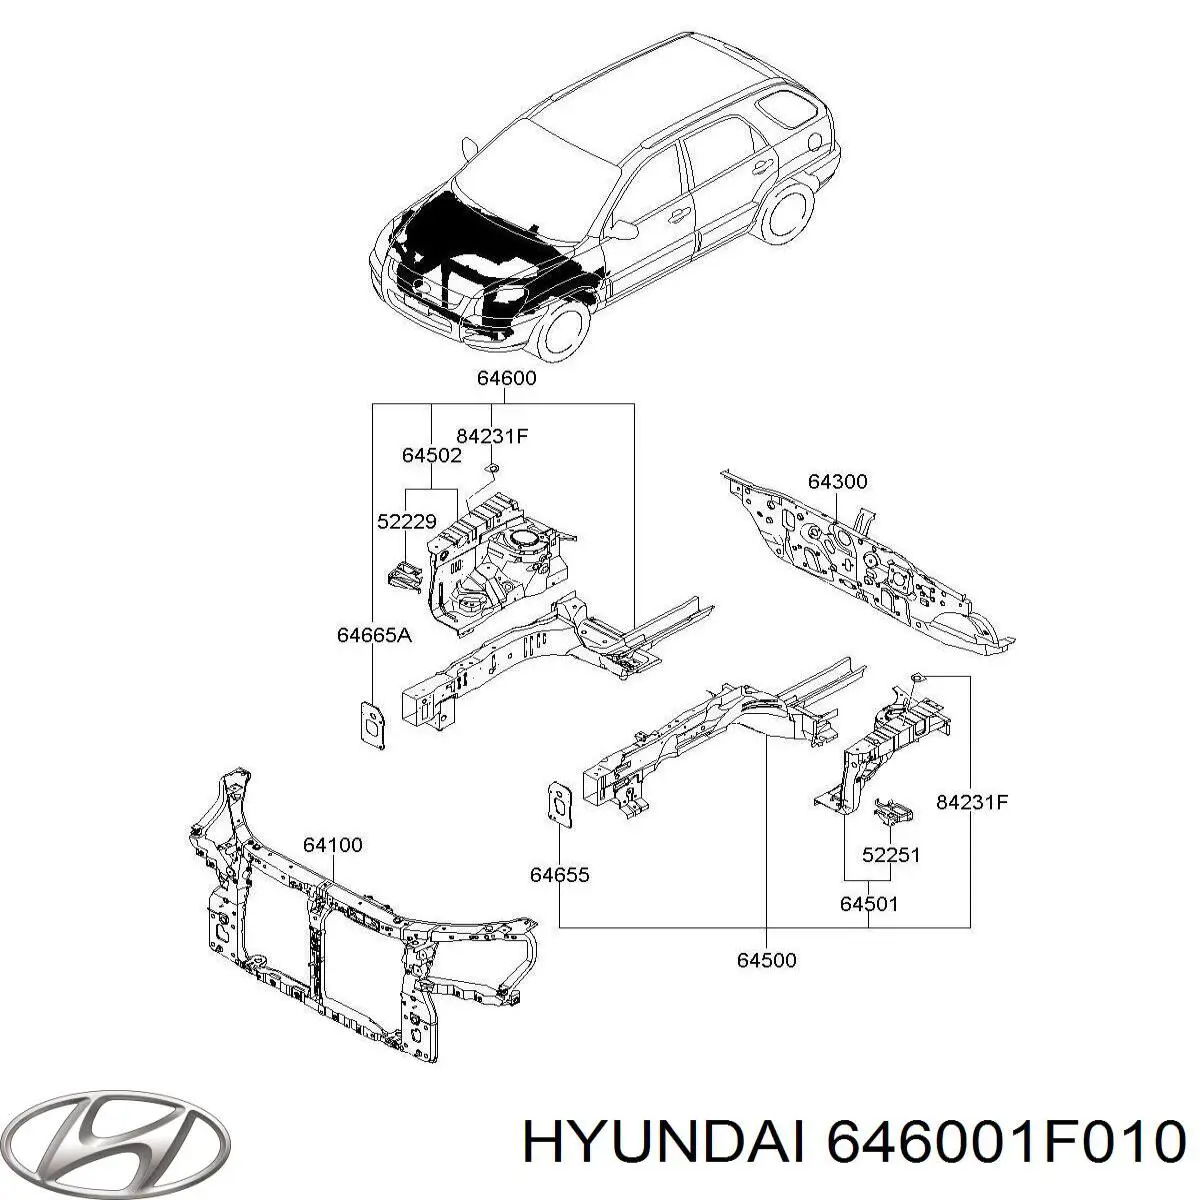 646001F010 Hyundai/Kia larguero delantero derecho